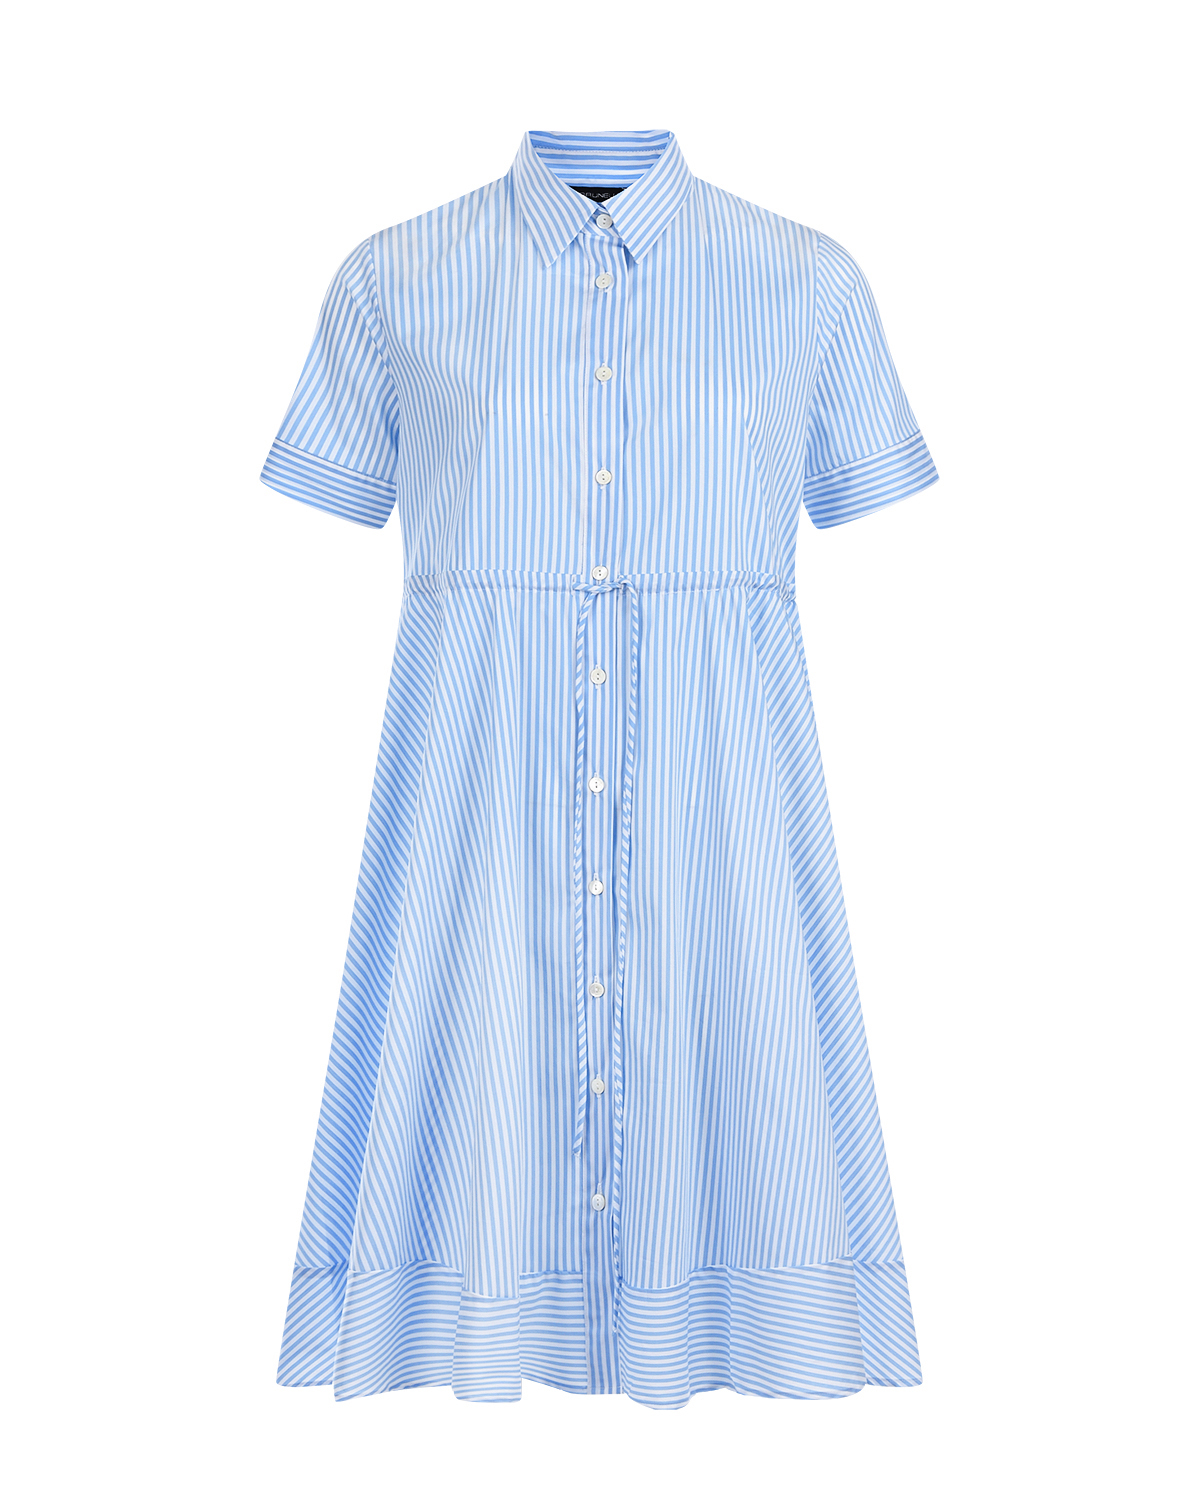 Ллатье для беременных в бело-голубую полоску Pietro Brunelli